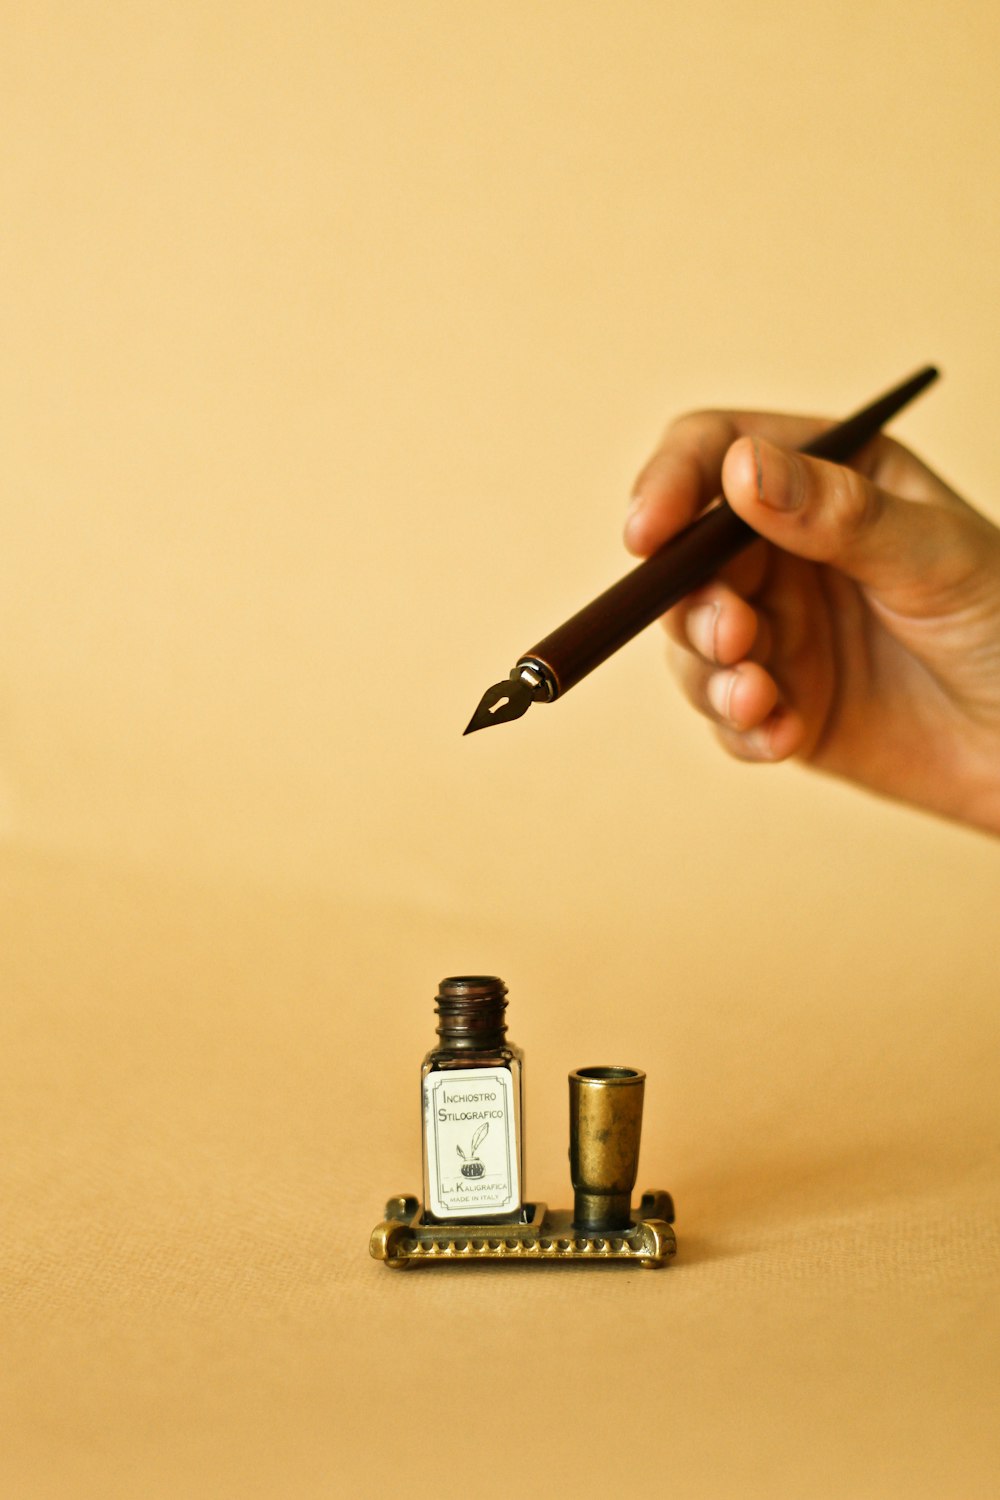 uma pessoa segurando uma caneta e escrevendo em um pedaço de papel